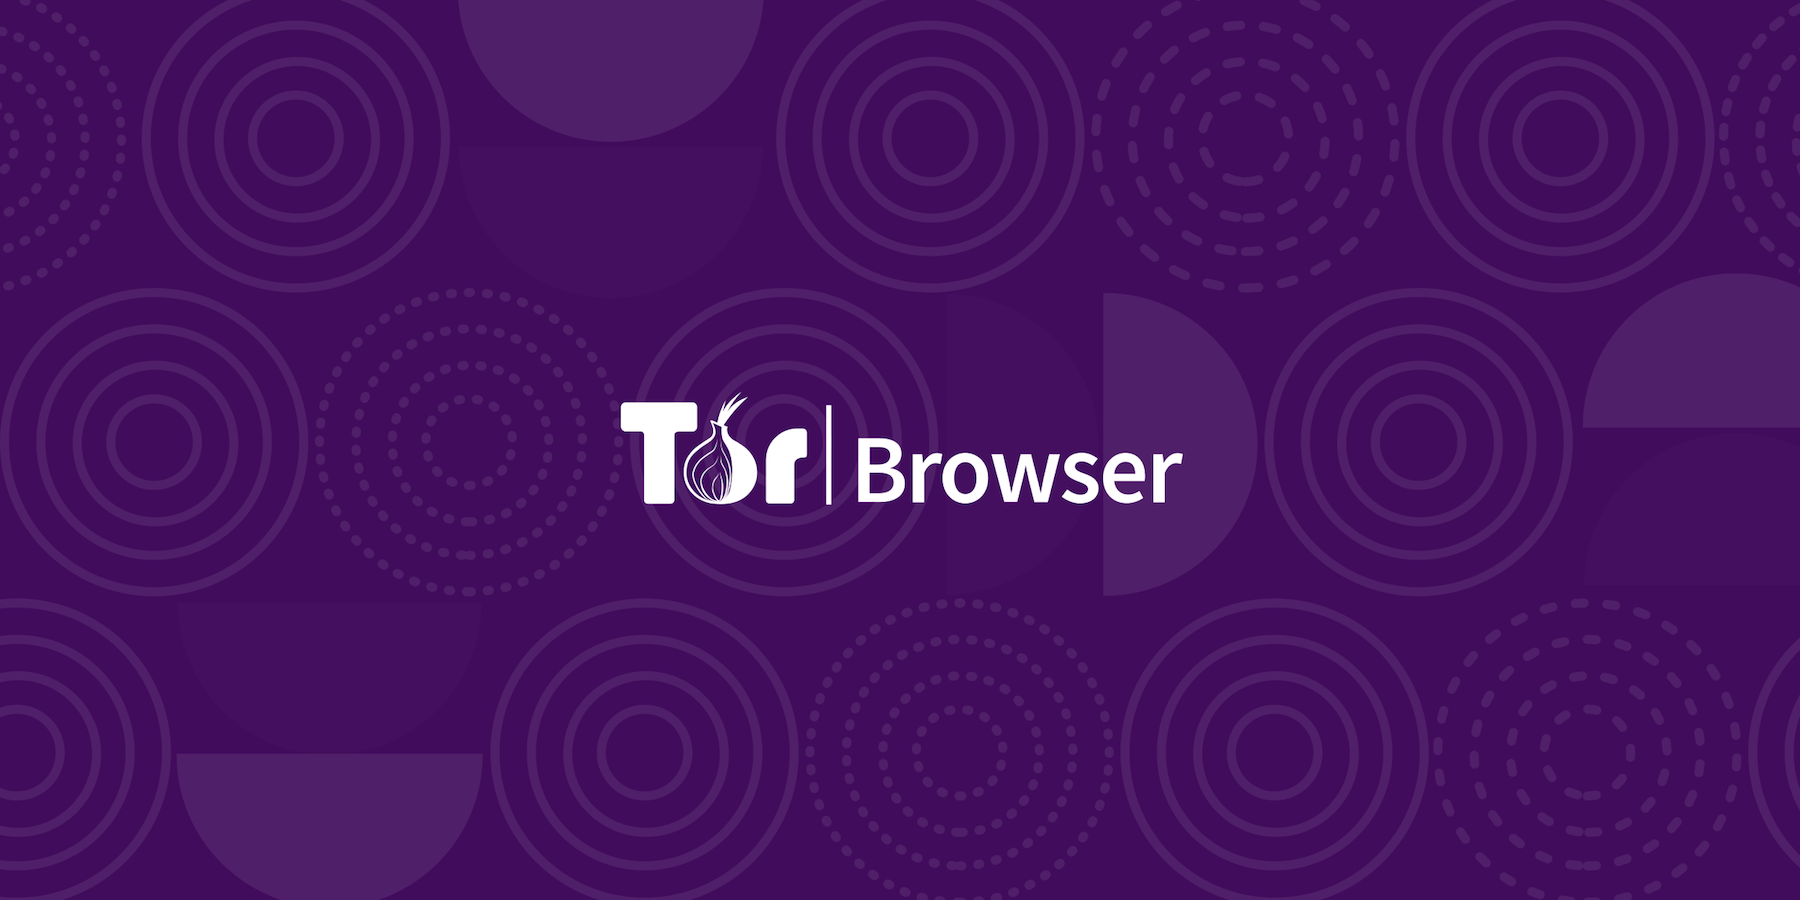 Is there a mobile tor browser гирда скачать браузер тор бесплатно на русском языке с официального сайта hydra2web